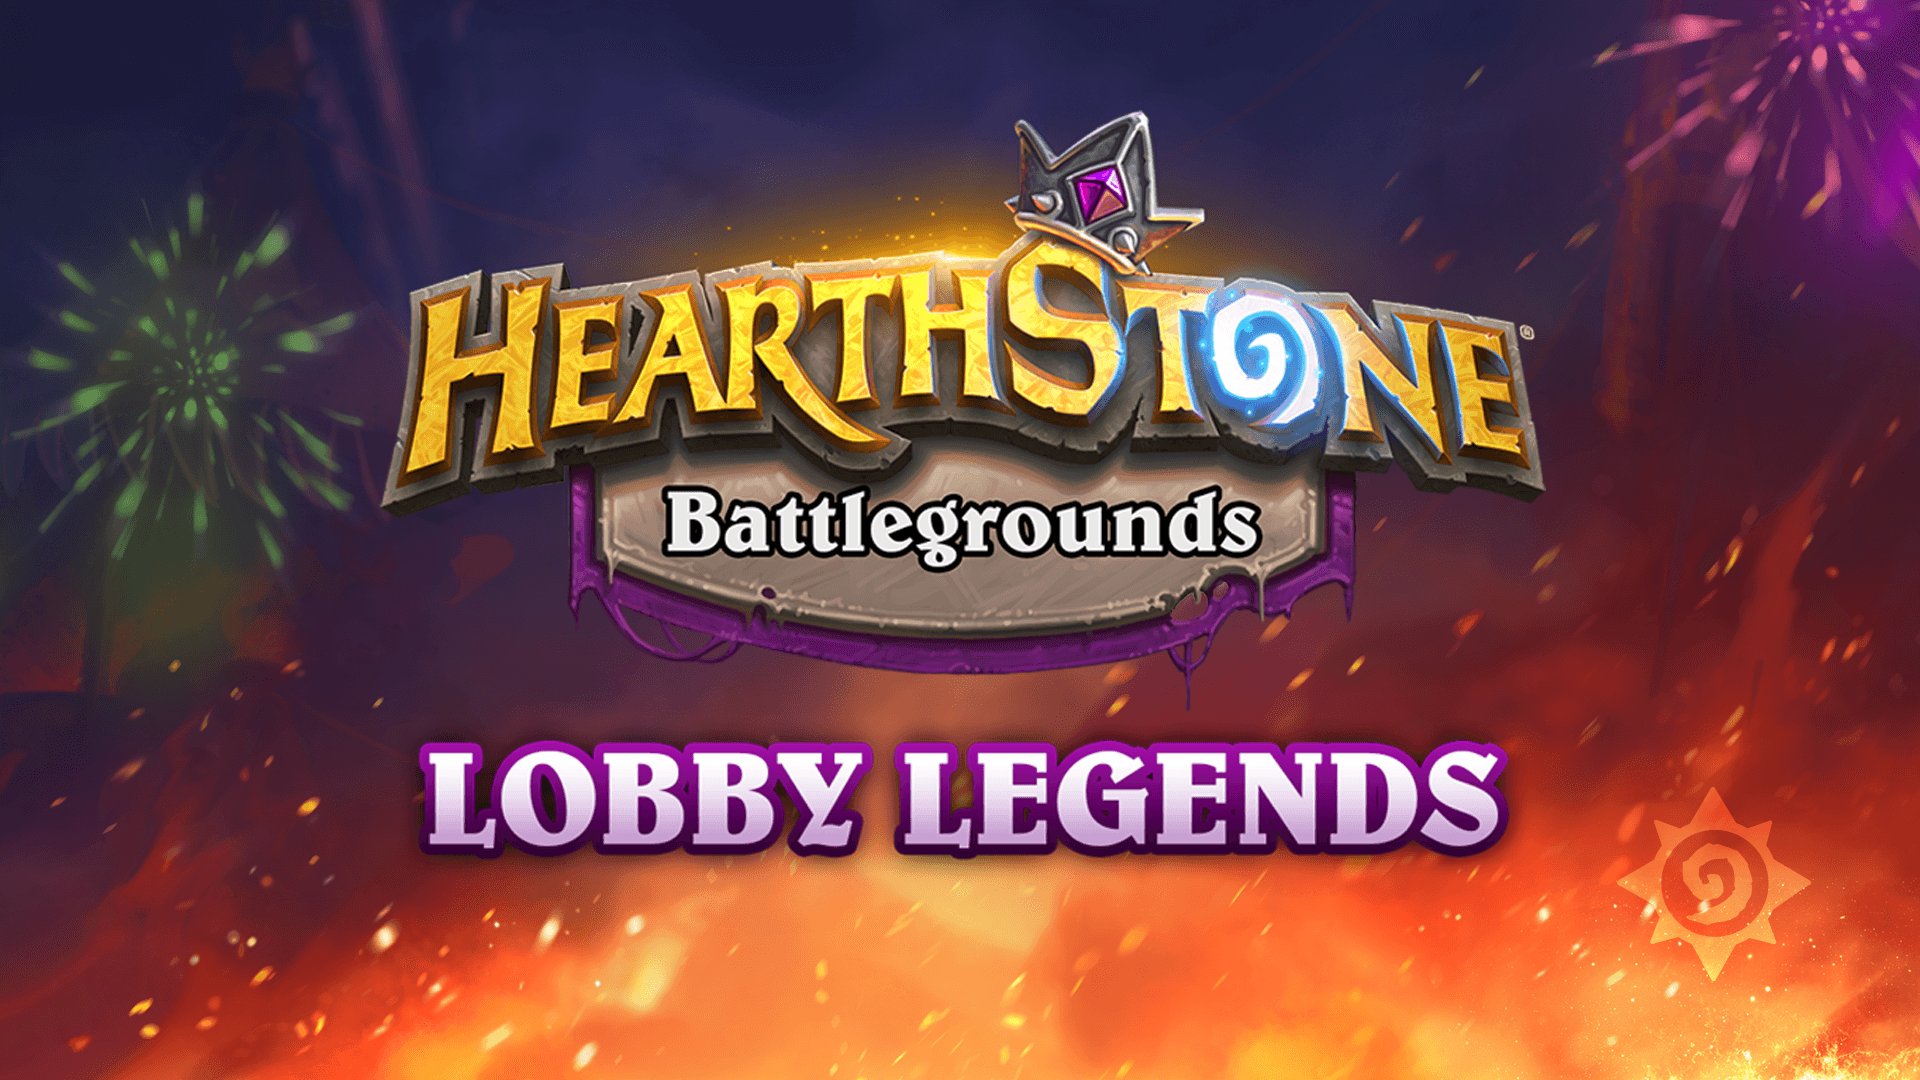 Festiwal Ognia zmierza do Battlegrounds: Lobby Legends w Hearthstone